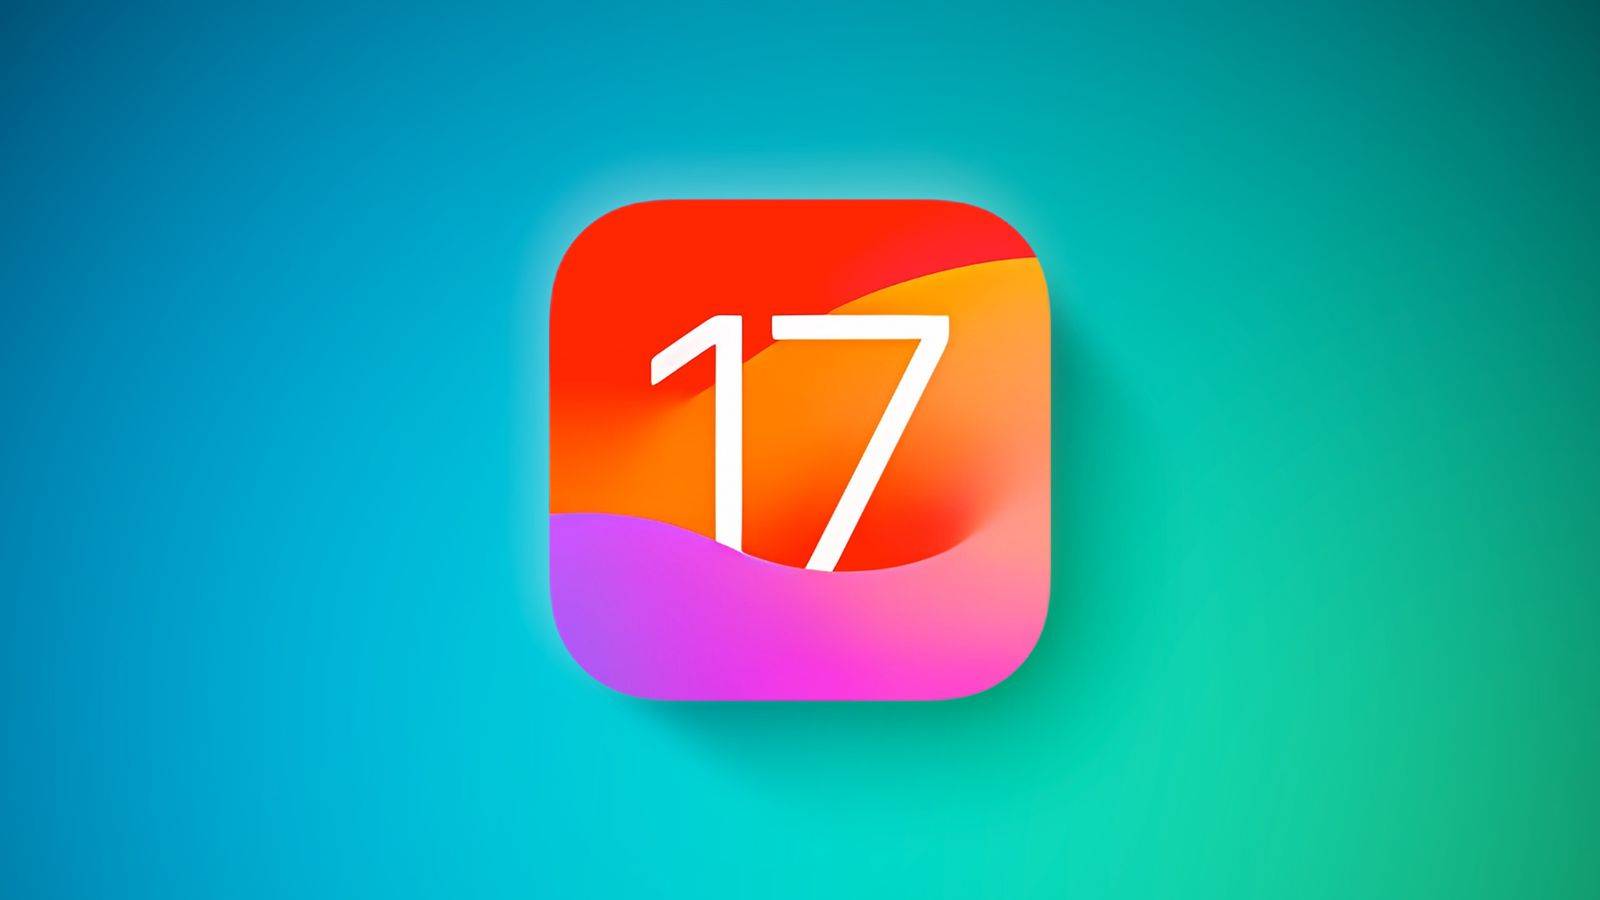 iOS 17.1 a fost Lansat. Iata Lista Completa de Noutati pentru iPhone si iPad